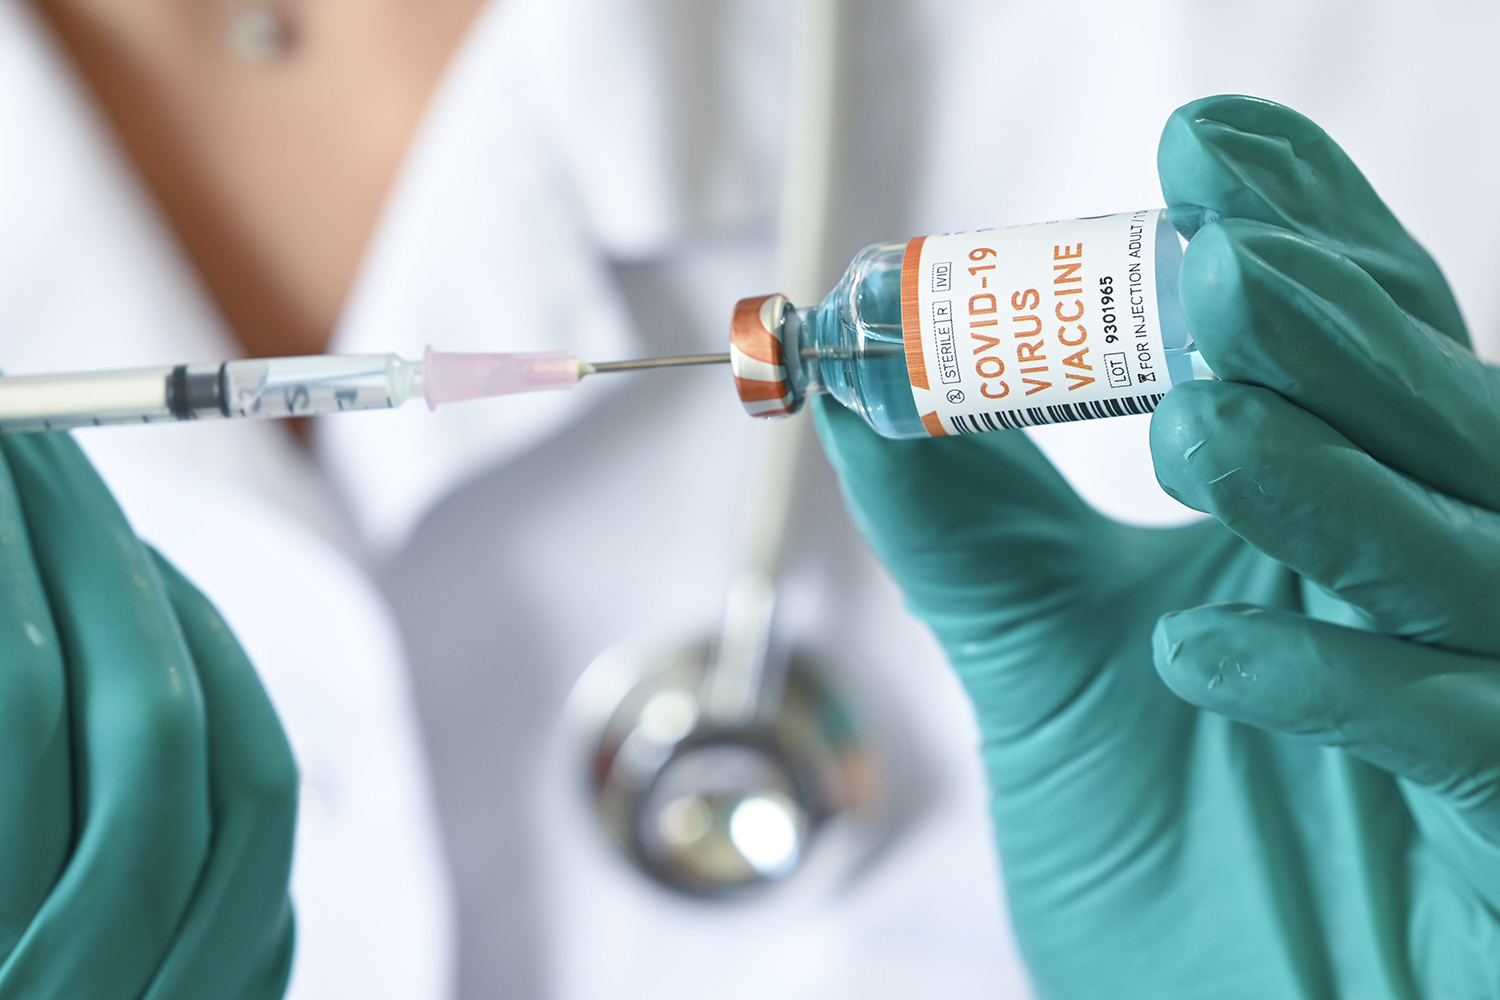 Rússia registra primeira vacina do mundo contra Covid-19